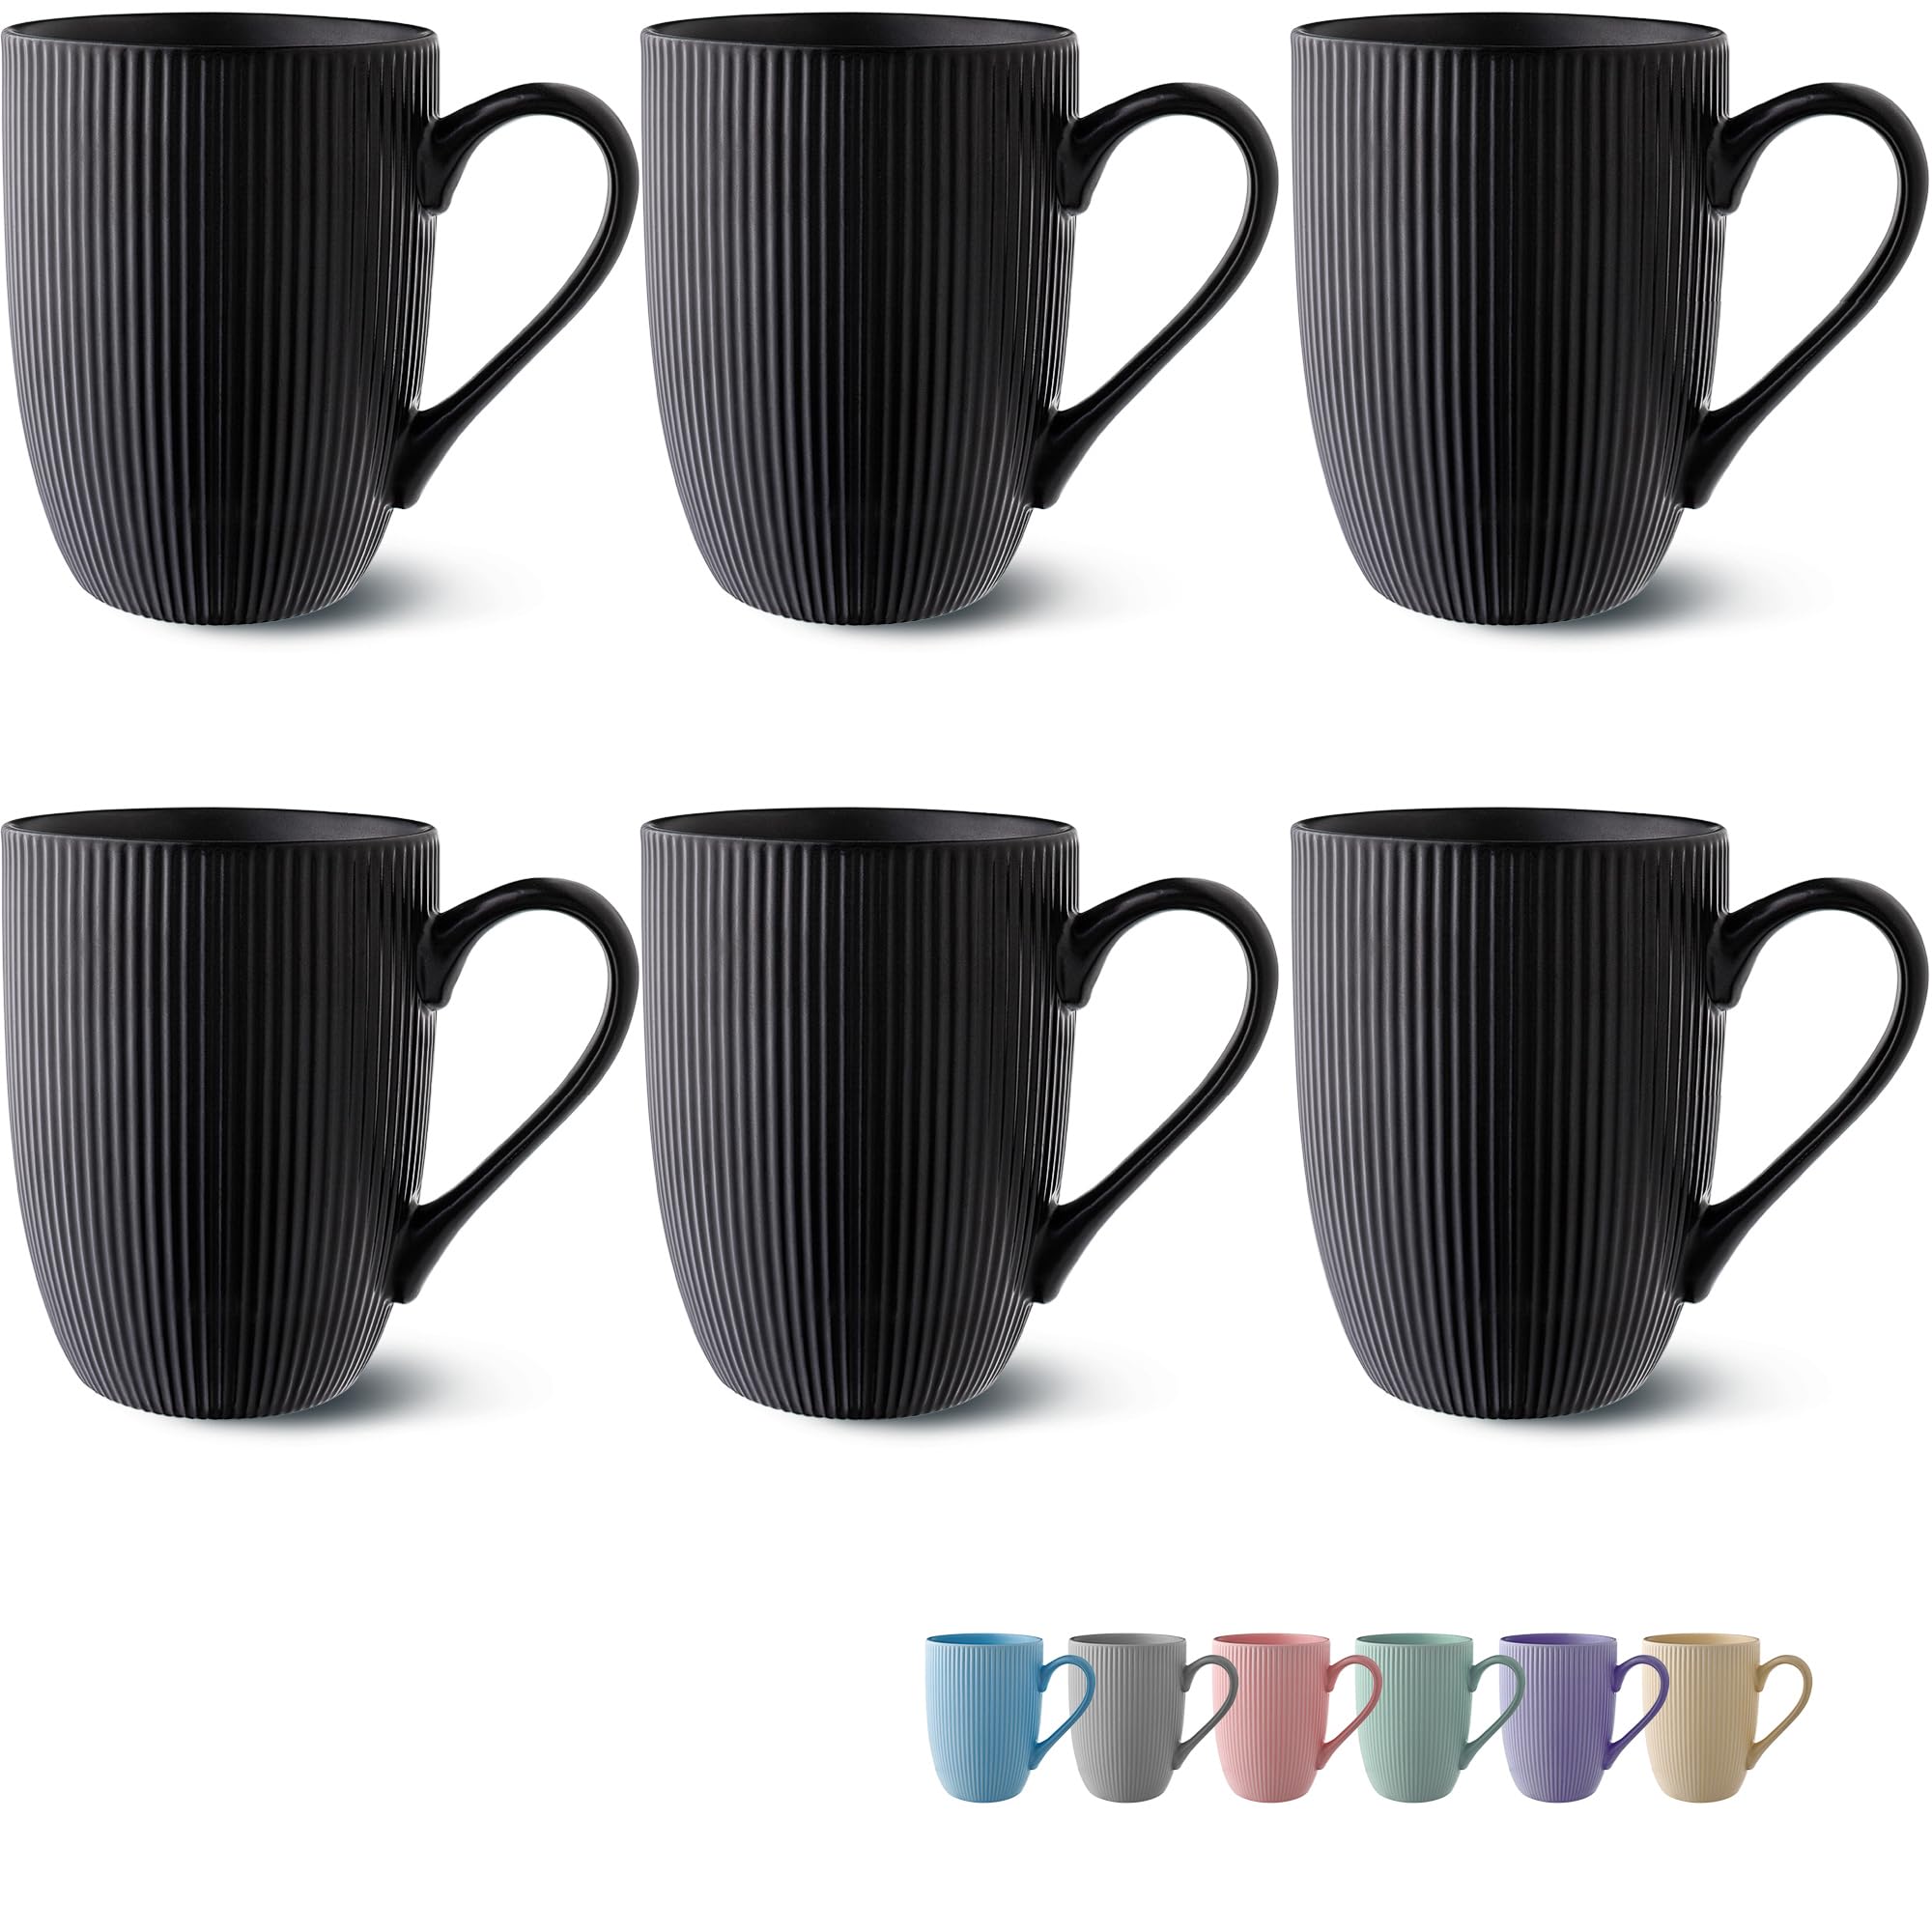 bon prix Tasse à Café - Lot 6 Tasses à Café Noir - Modèle Unique - Céramique Mate - Résistant Micro-Ondes & Lave-vaisselle - Poignée Confortable Wn62qlWOx à vendre